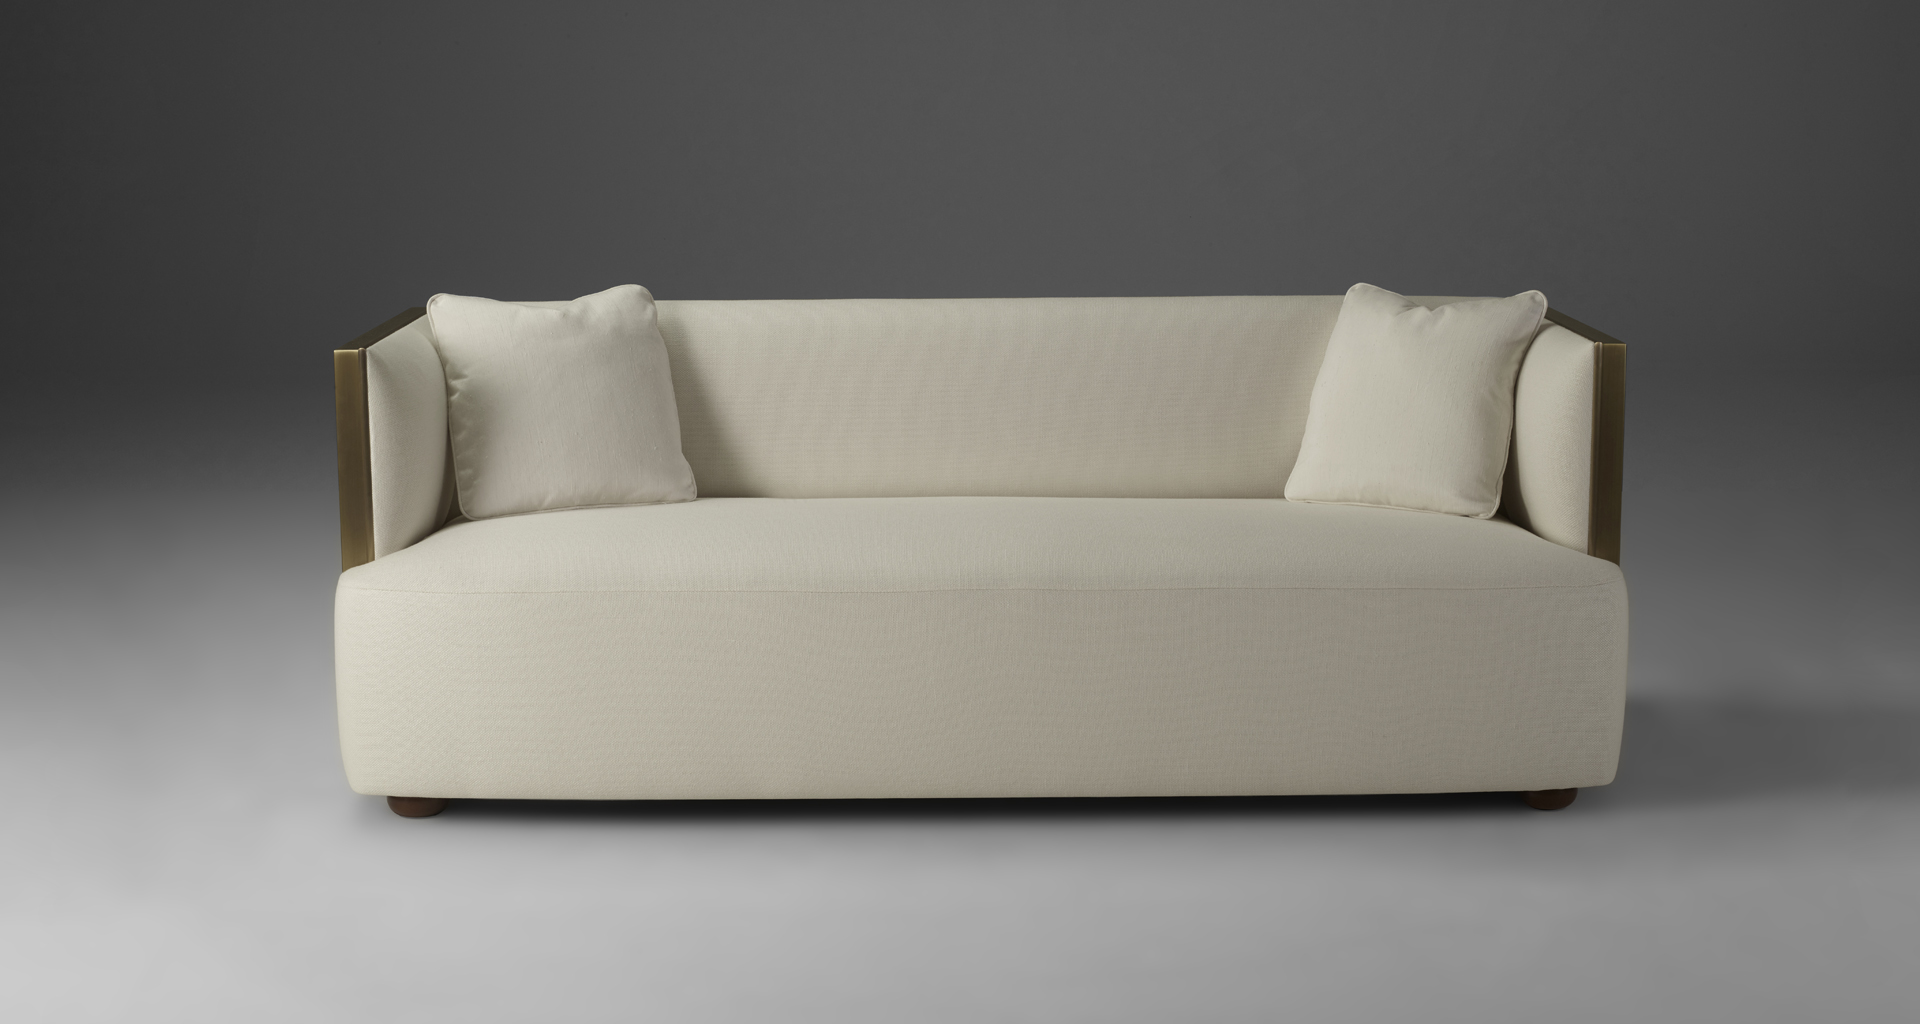 Boccaccio è un divano in bronzo rivestito in tessuto, del catalogo di Promemoria | Promemoria